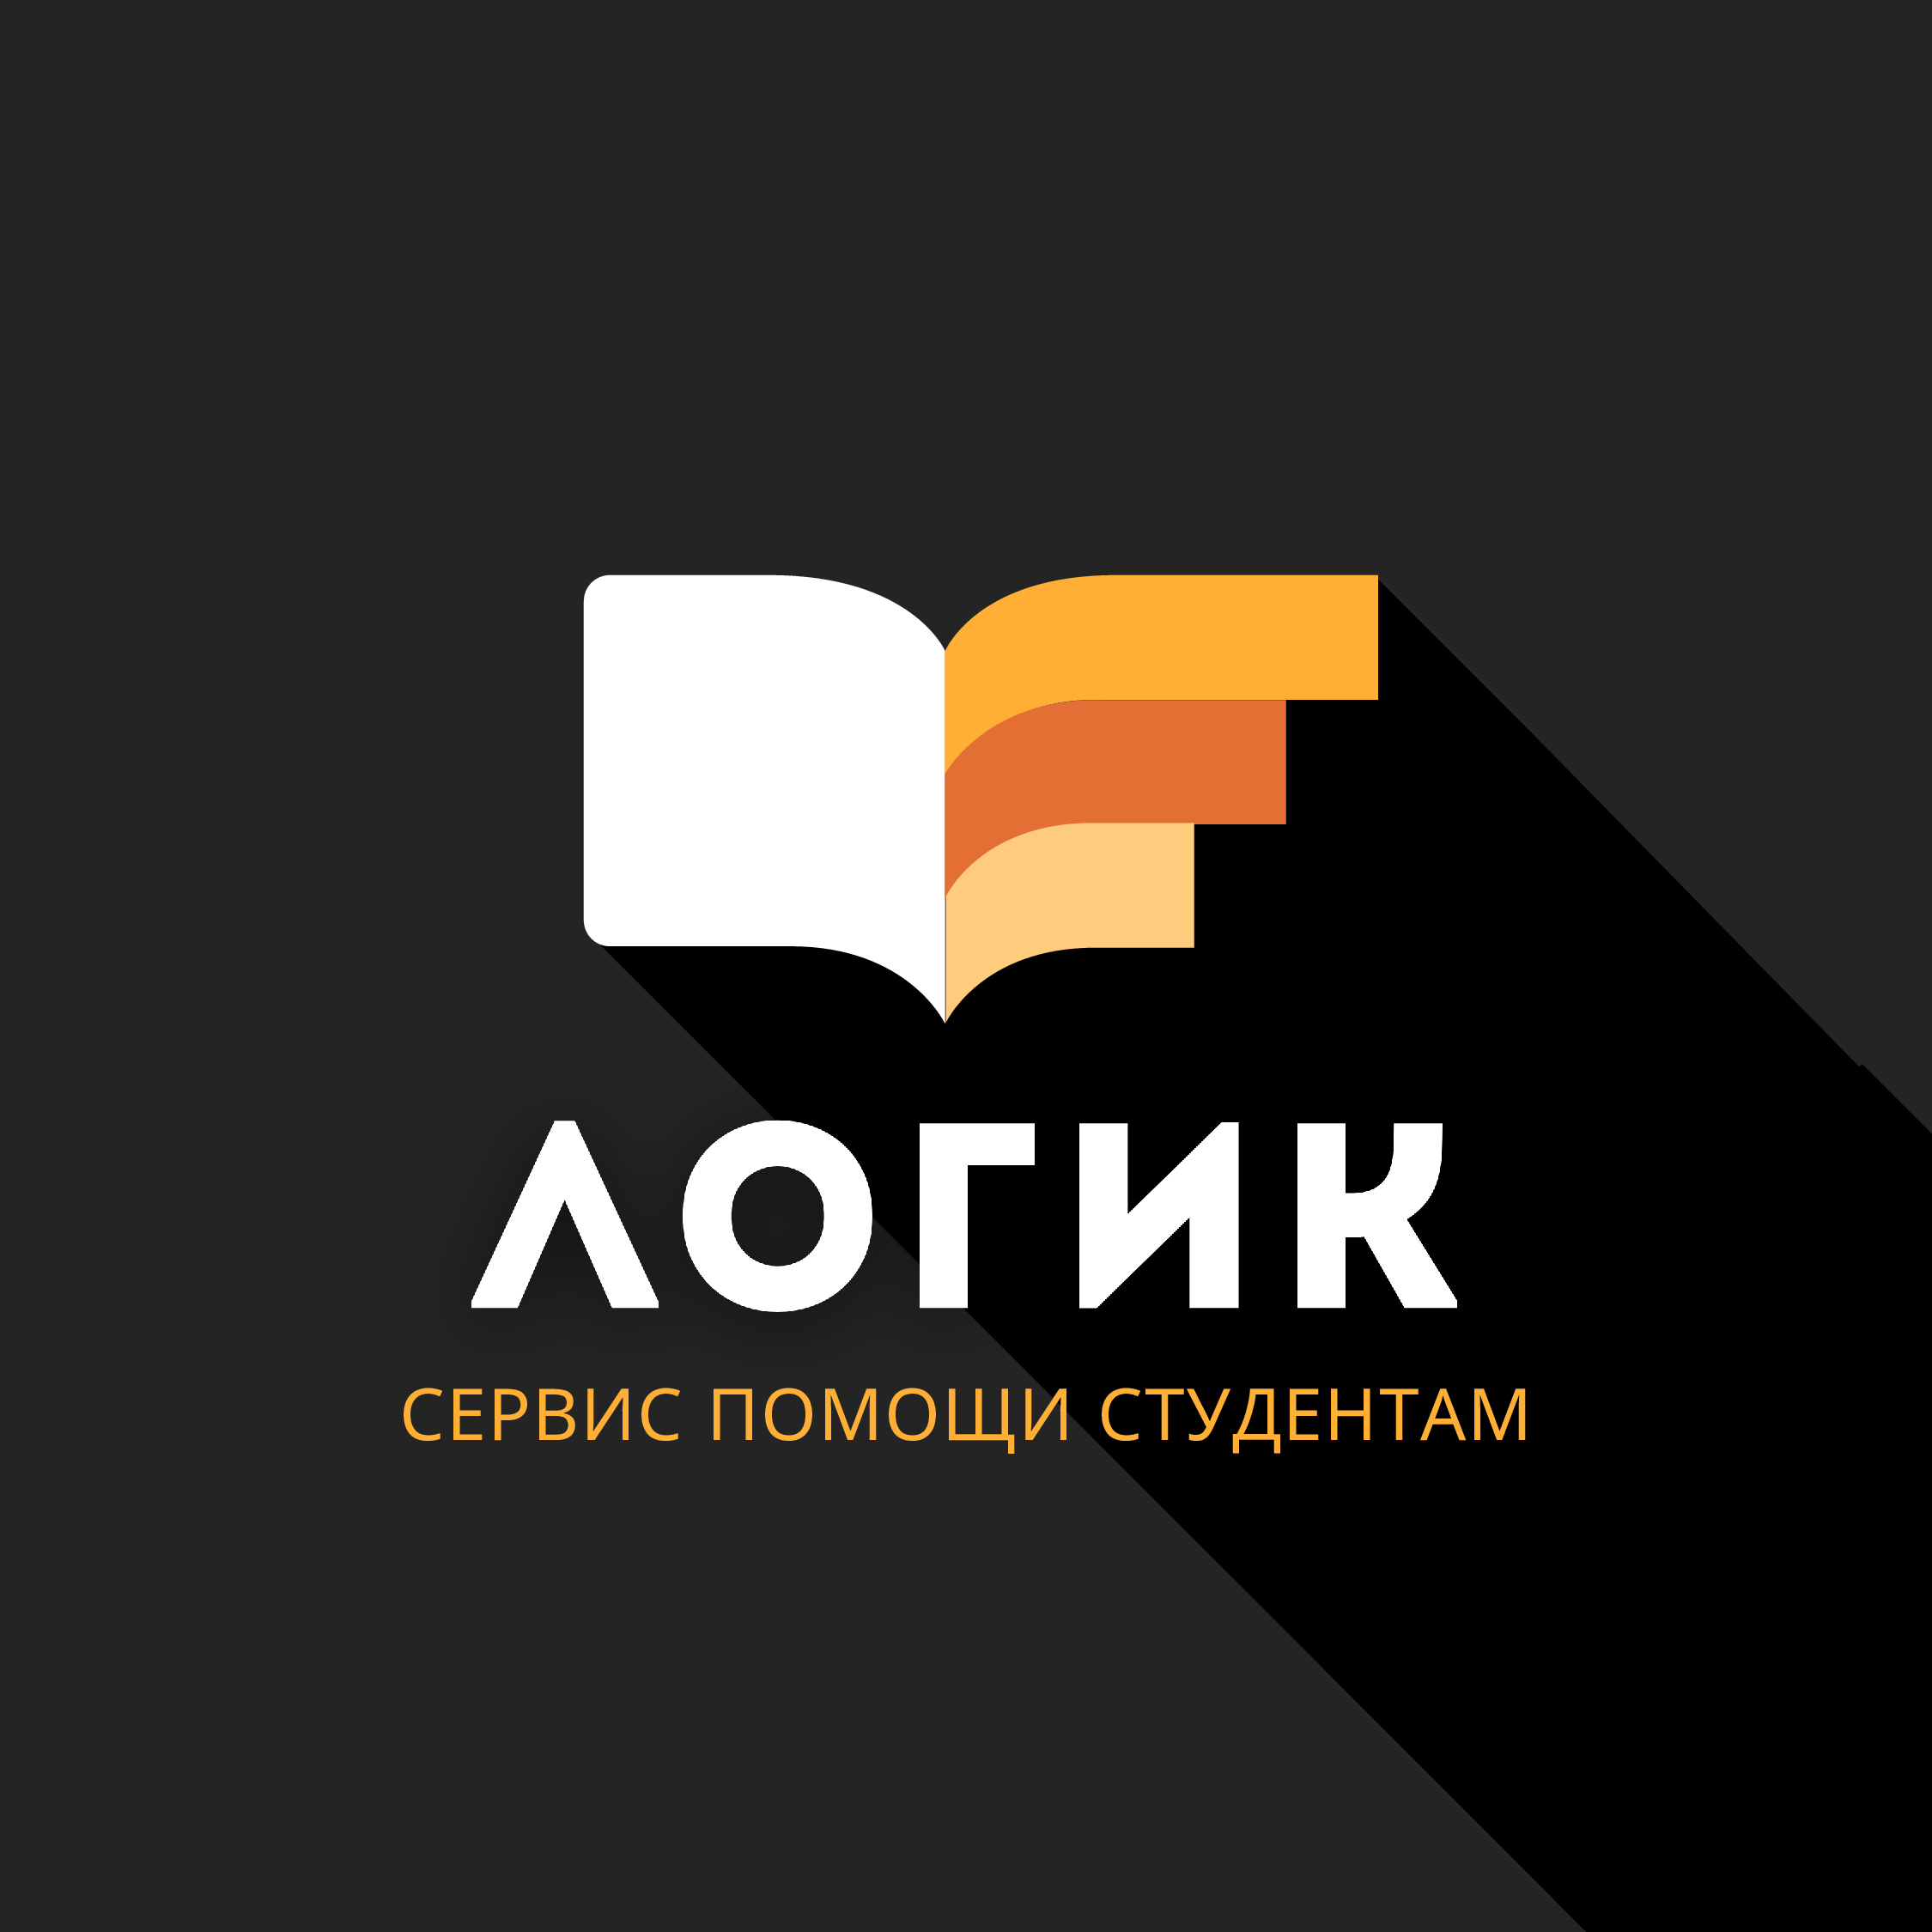 Логик — сервис помощи студентам и аспирантам в Горно-Алтайске